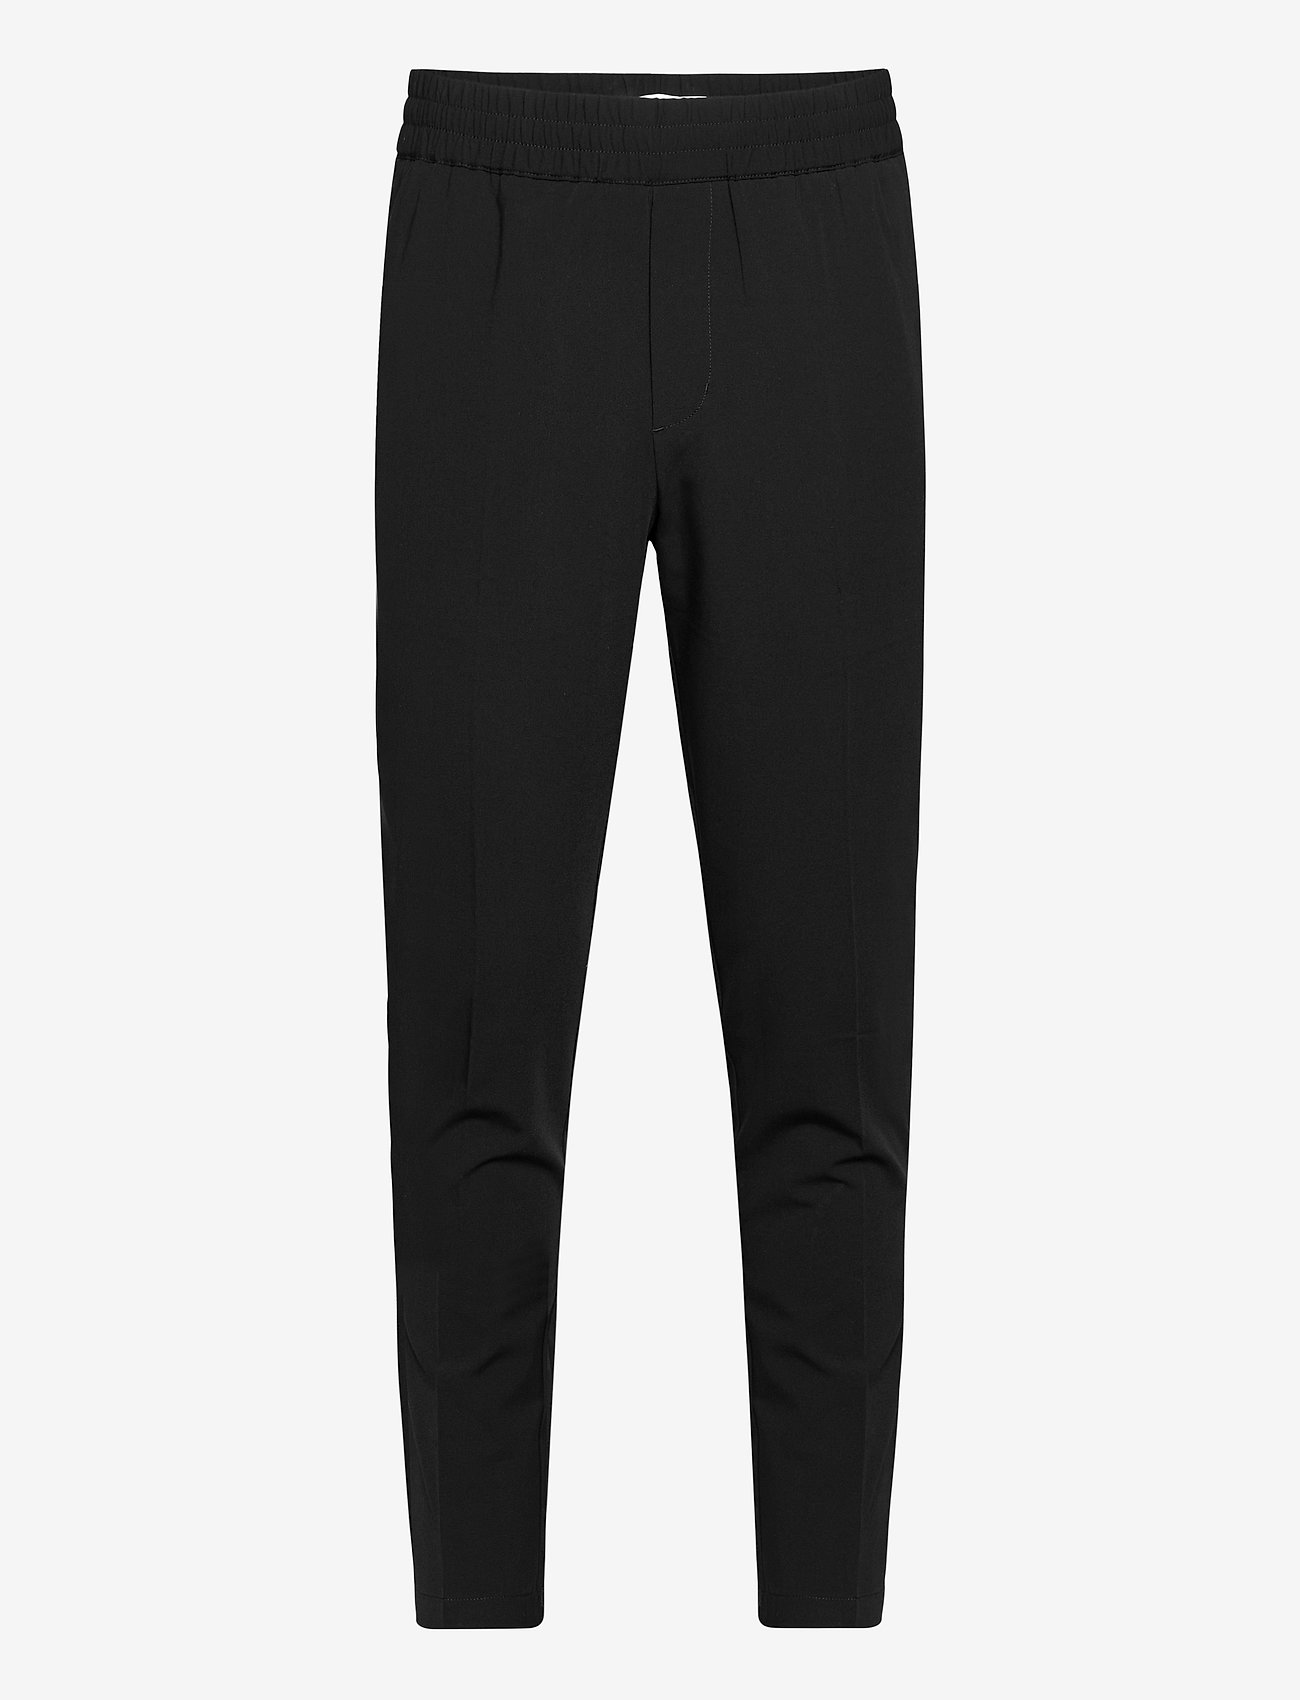 Samsøe Samsøe - Smithy trousers 10931 - spodnie na co dzień - black - 0